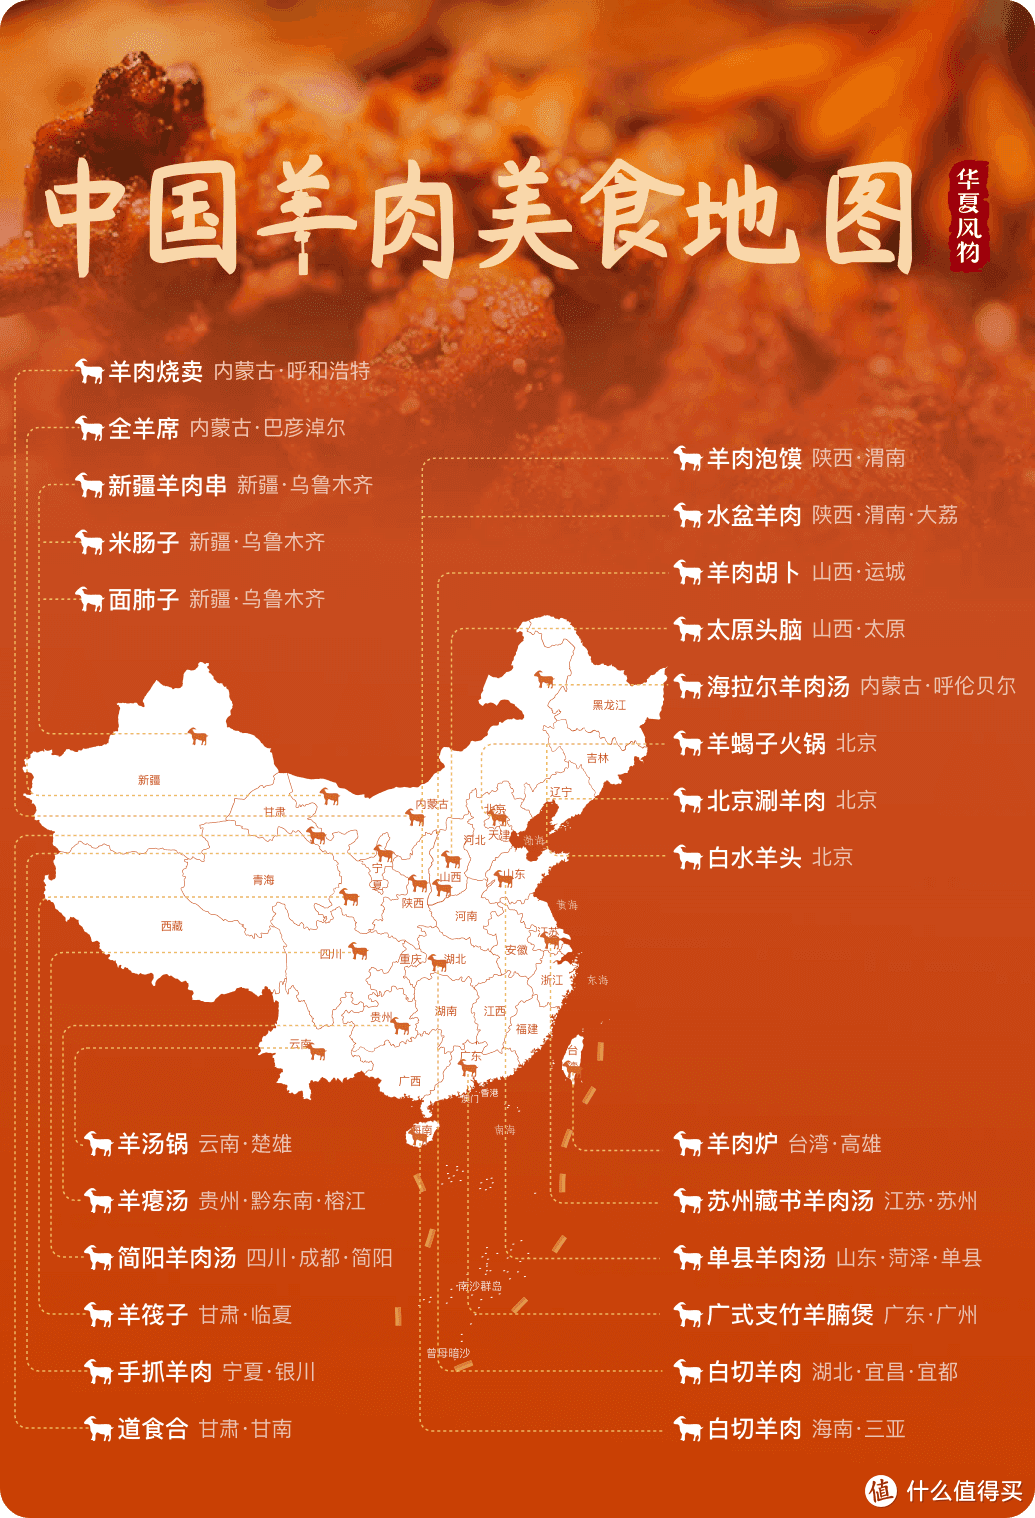 中国羊肉美食地图 ©华夏风物